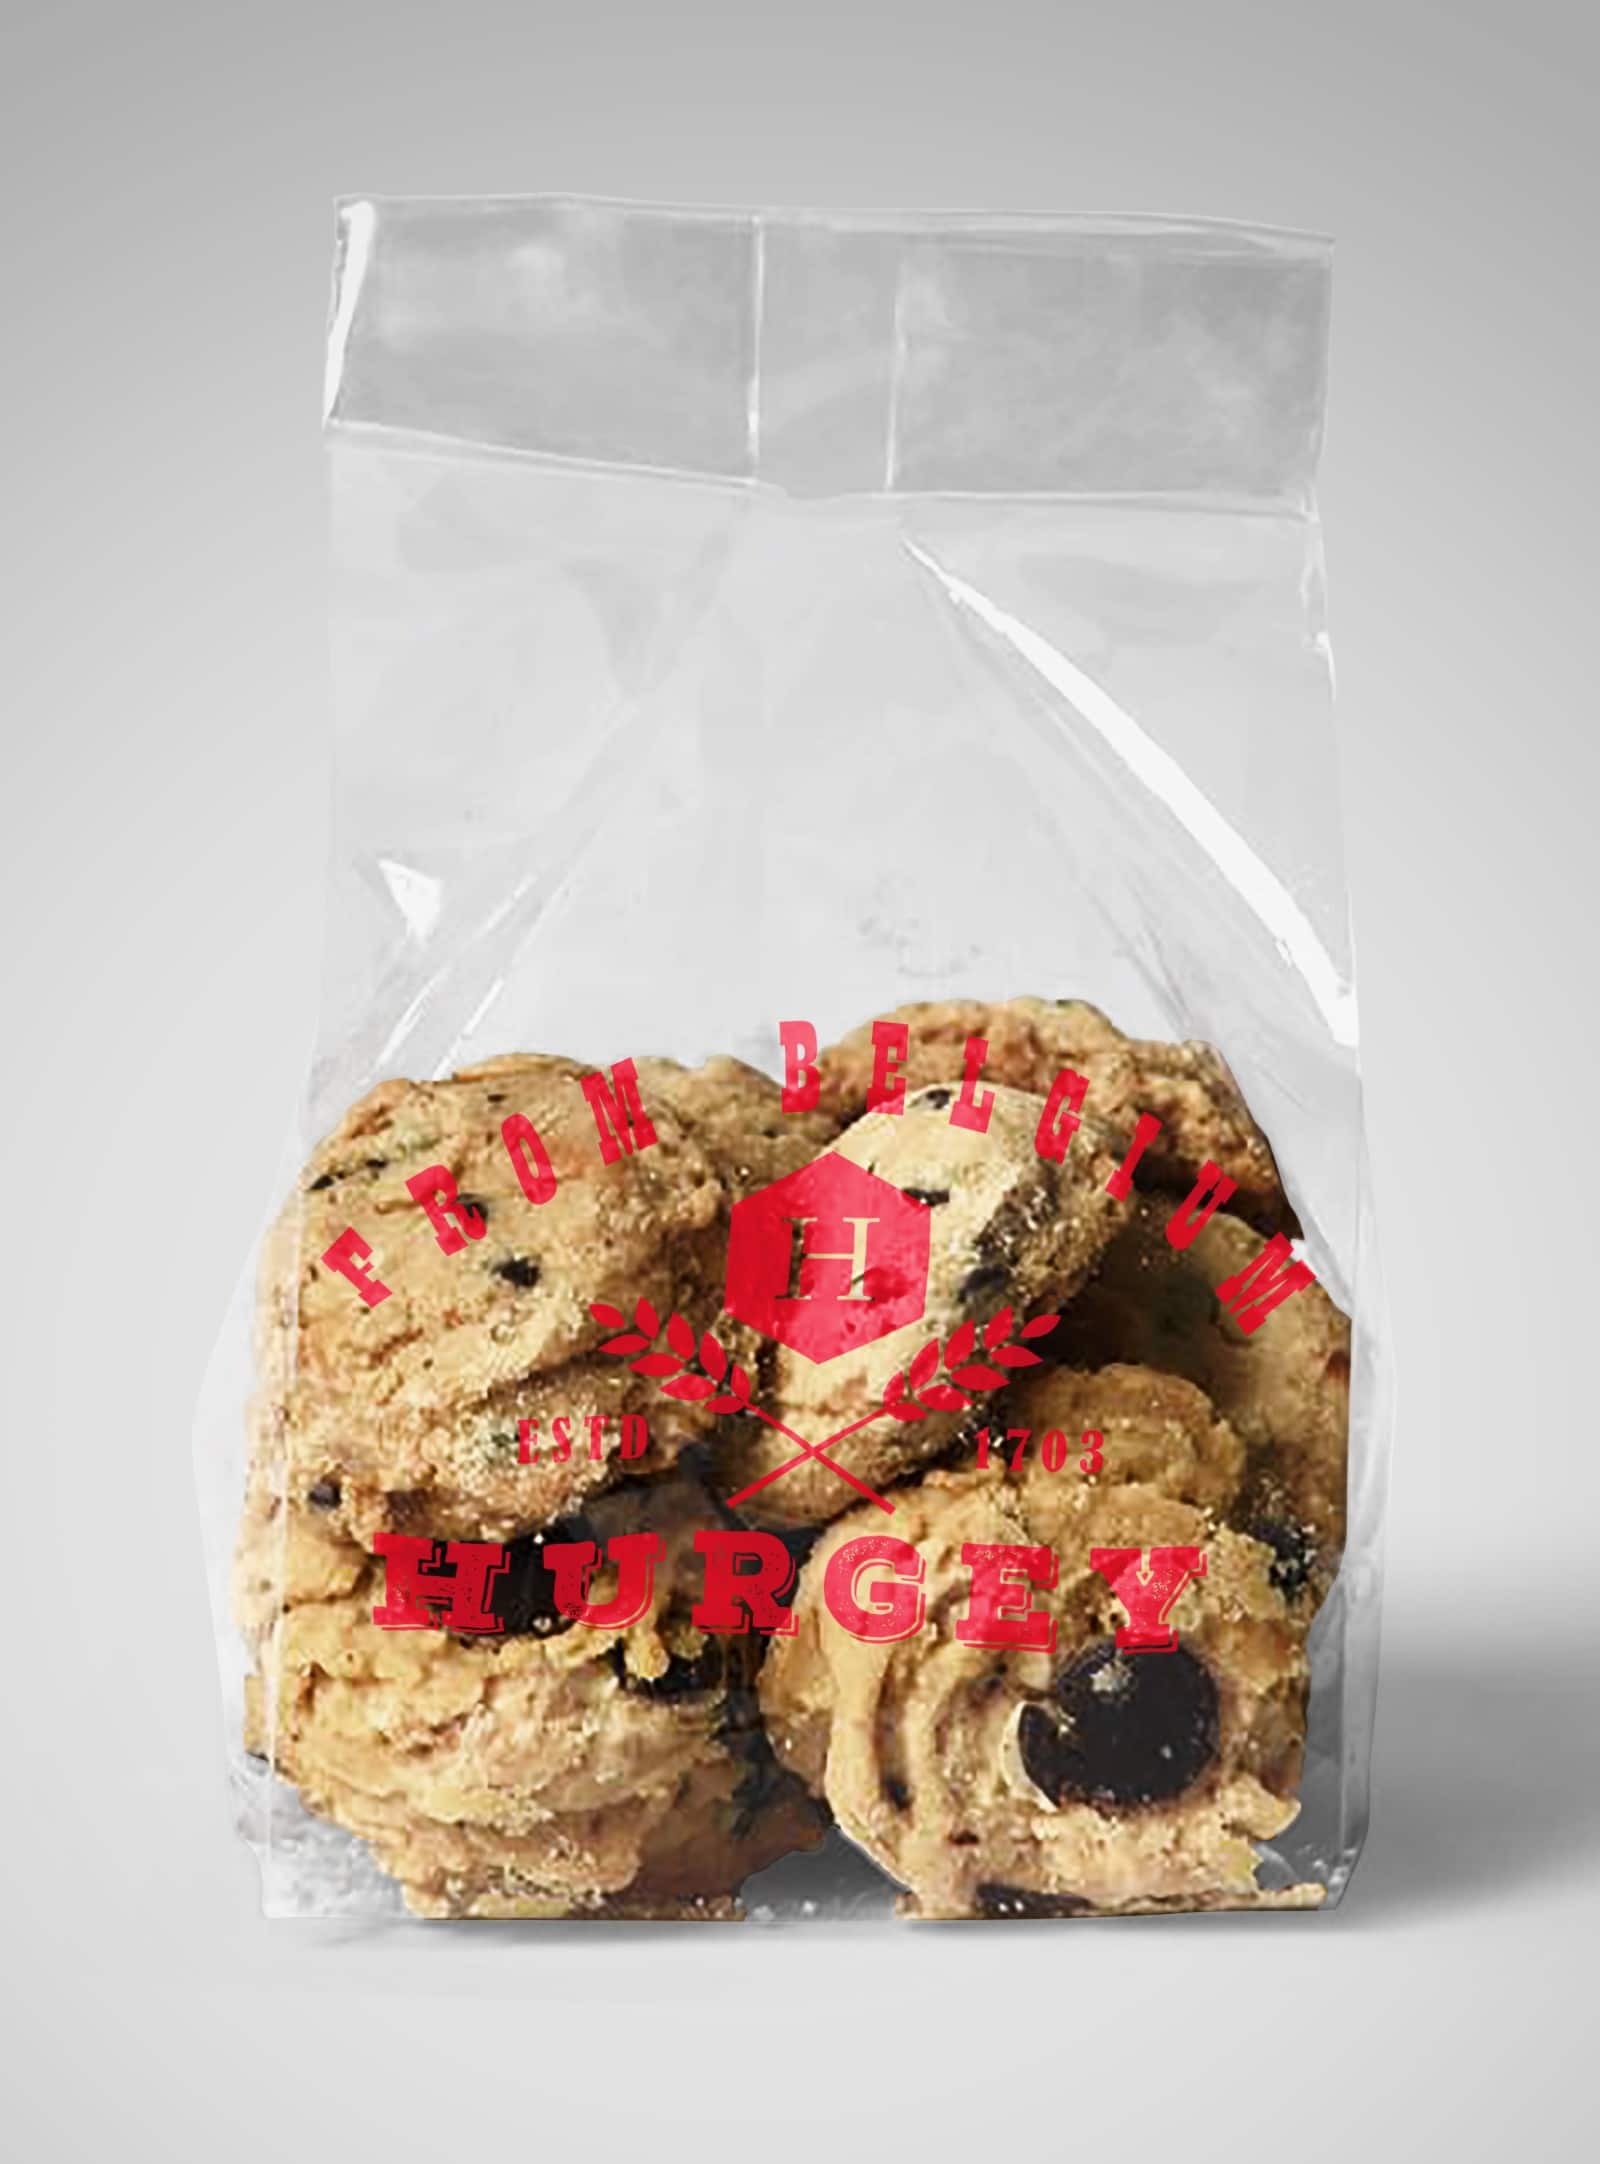 Free Bread Plus Cookies Plastic Bag Mockup - DesignHooks